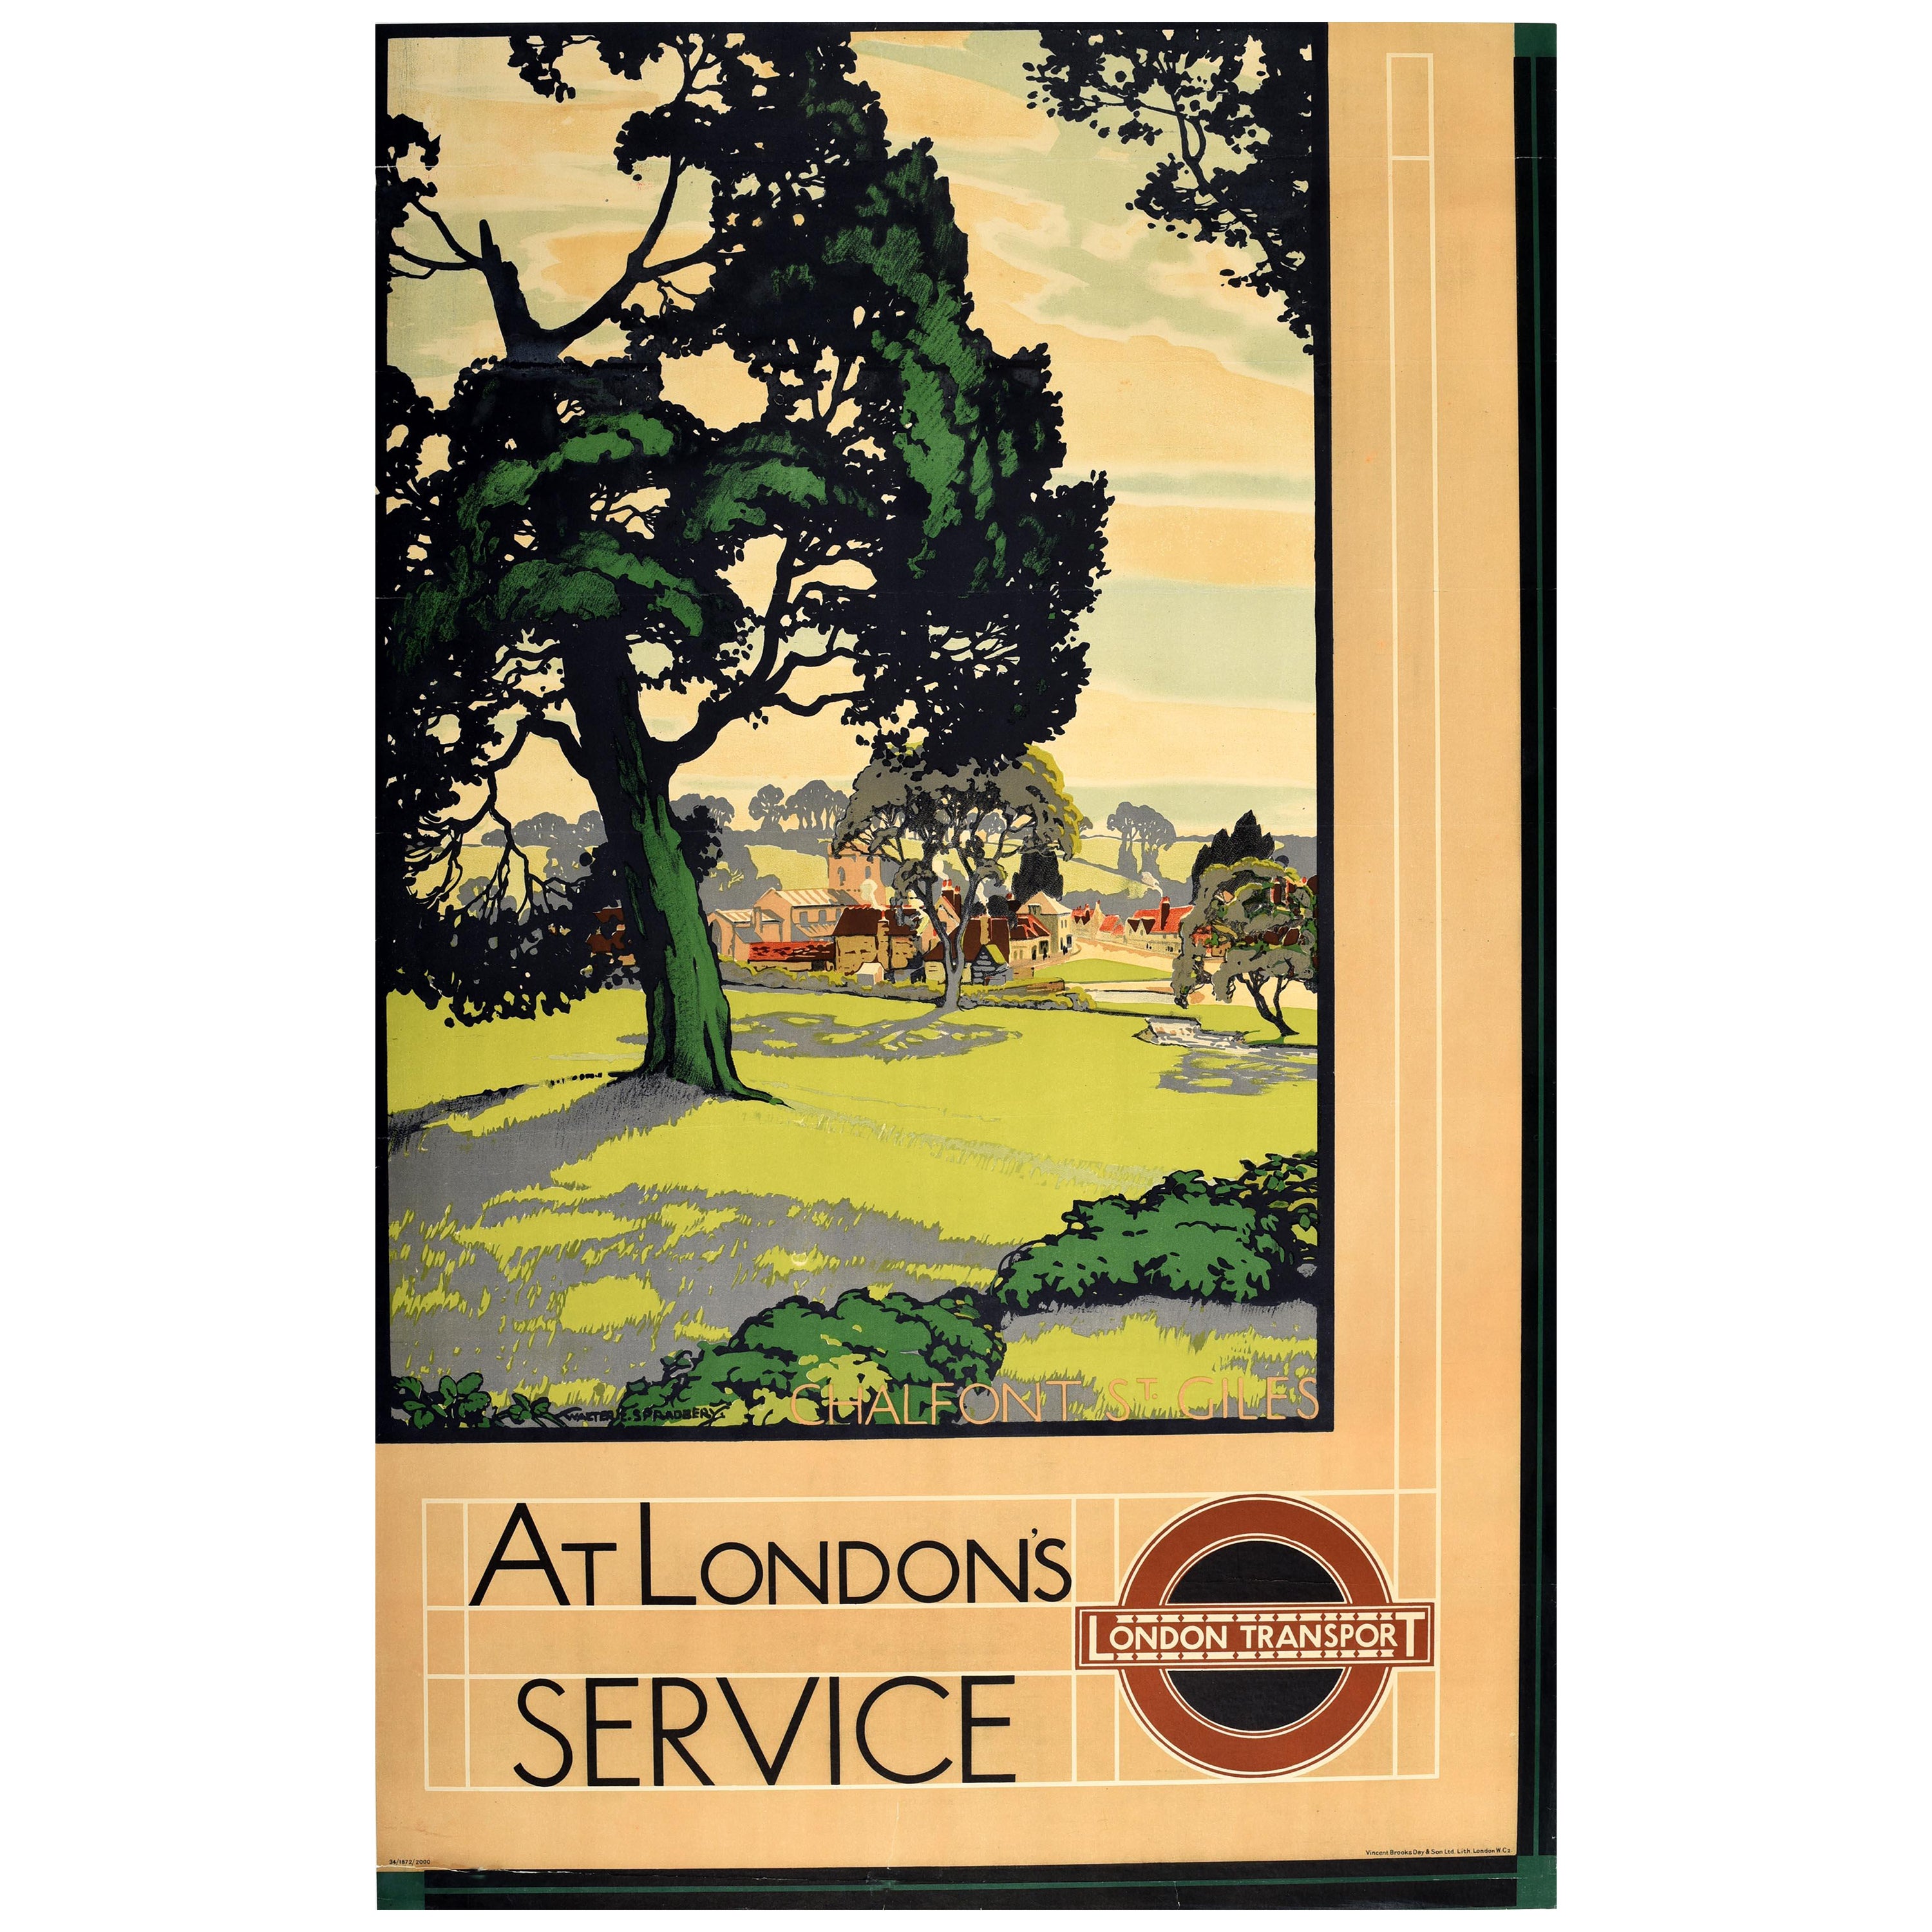 Affiche rétro originale des transports à Londres - « At London's Service Chalfont St Giles »